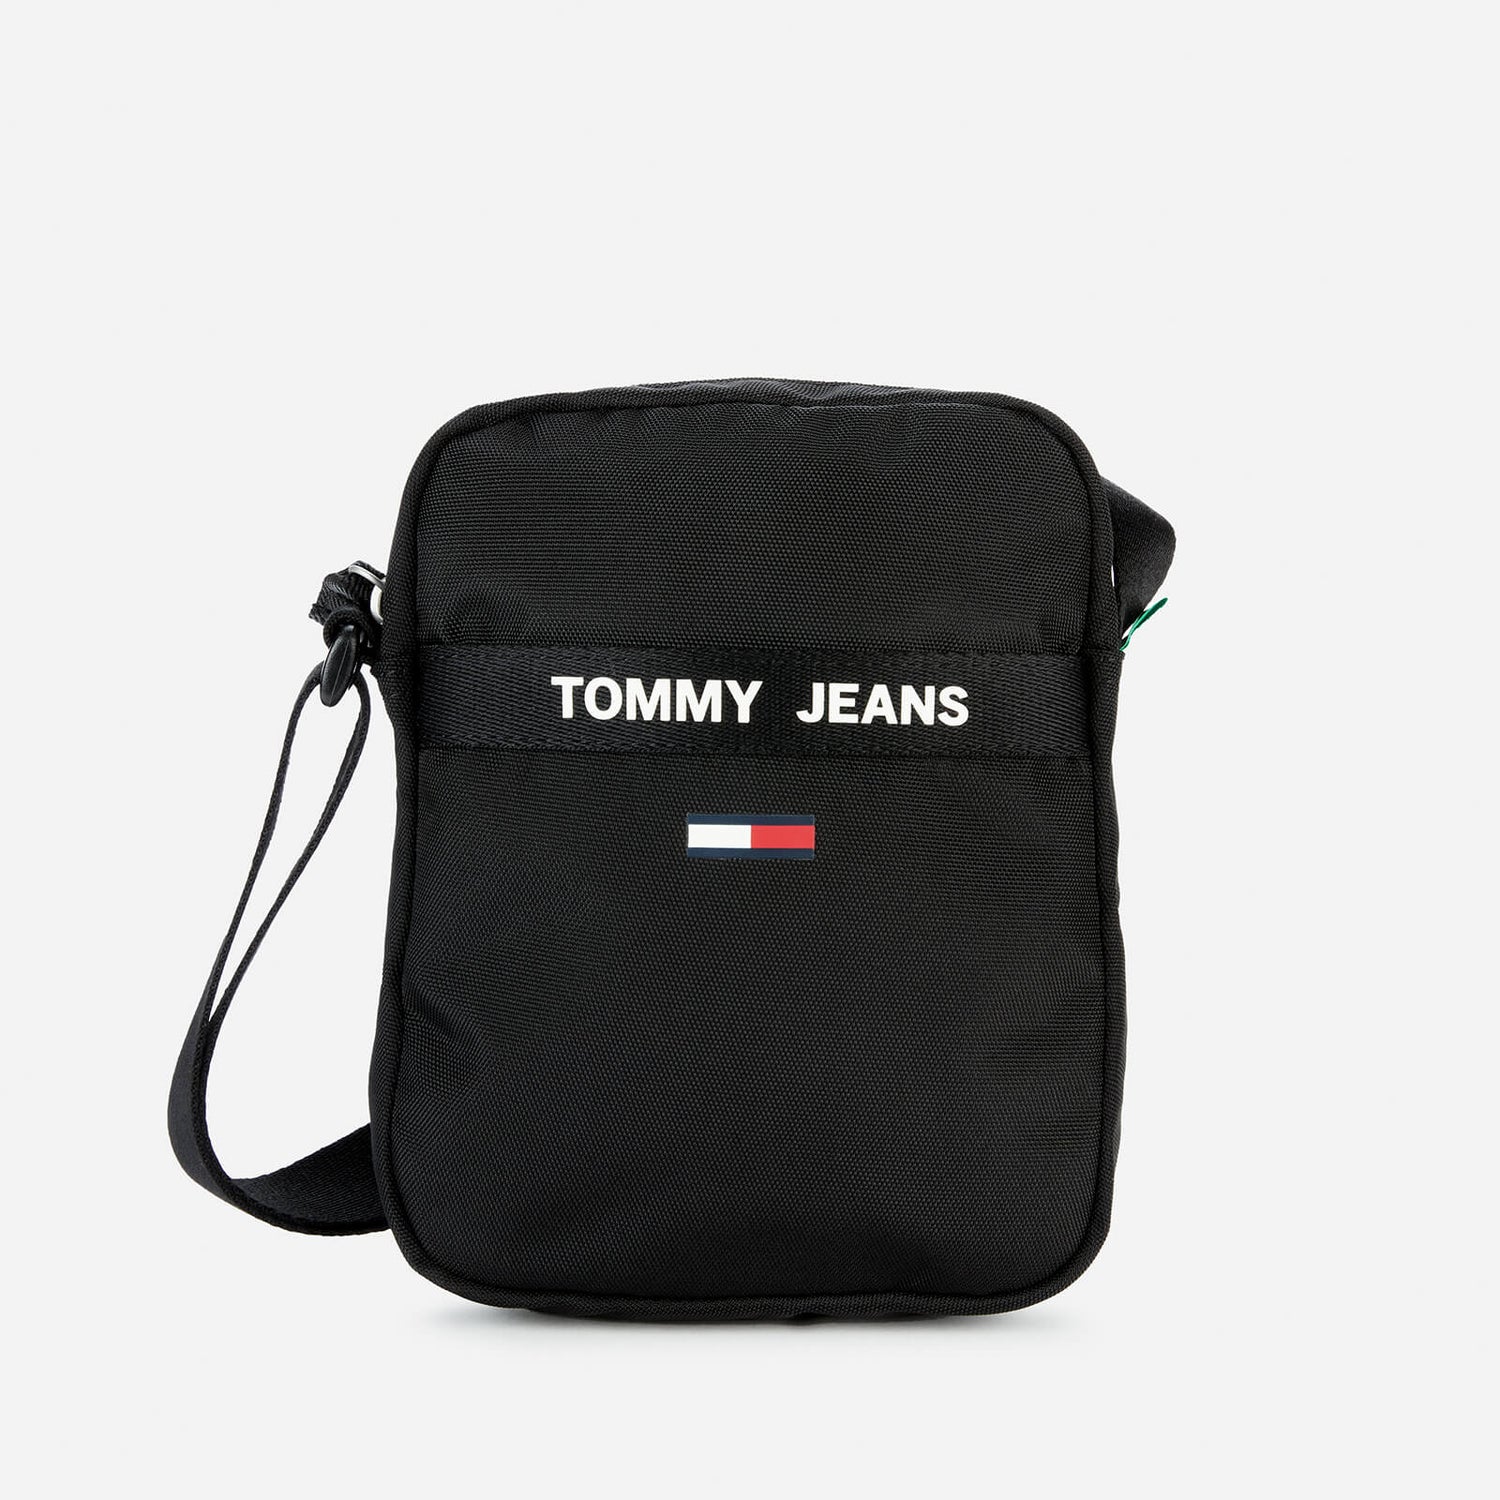 Tommy Jeans Men's Essential Reporter Bag - Black